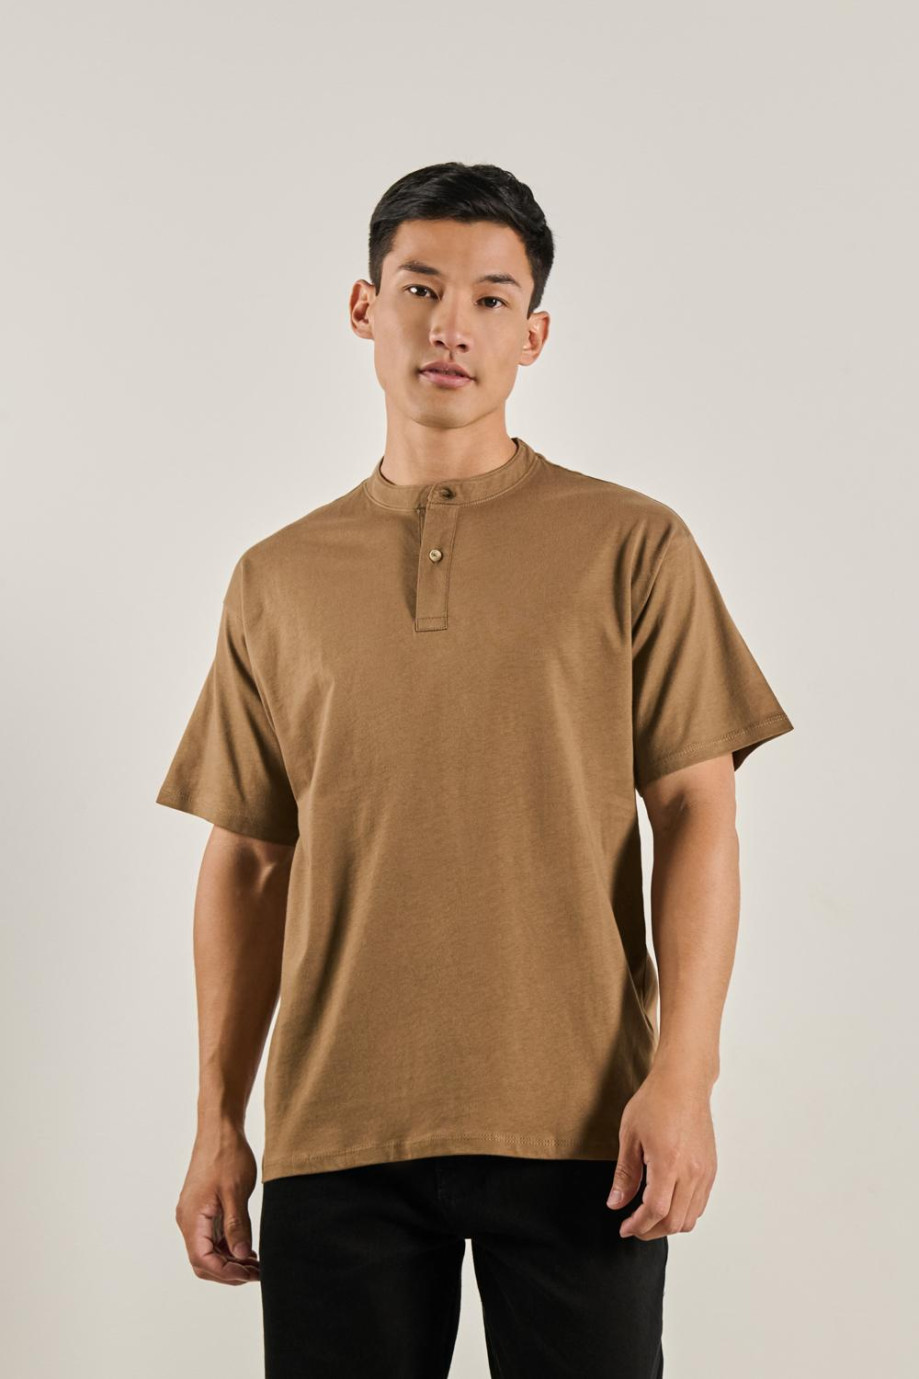 Camiseta para hombre unicolor en algodón, fit oversize y cuello neru.